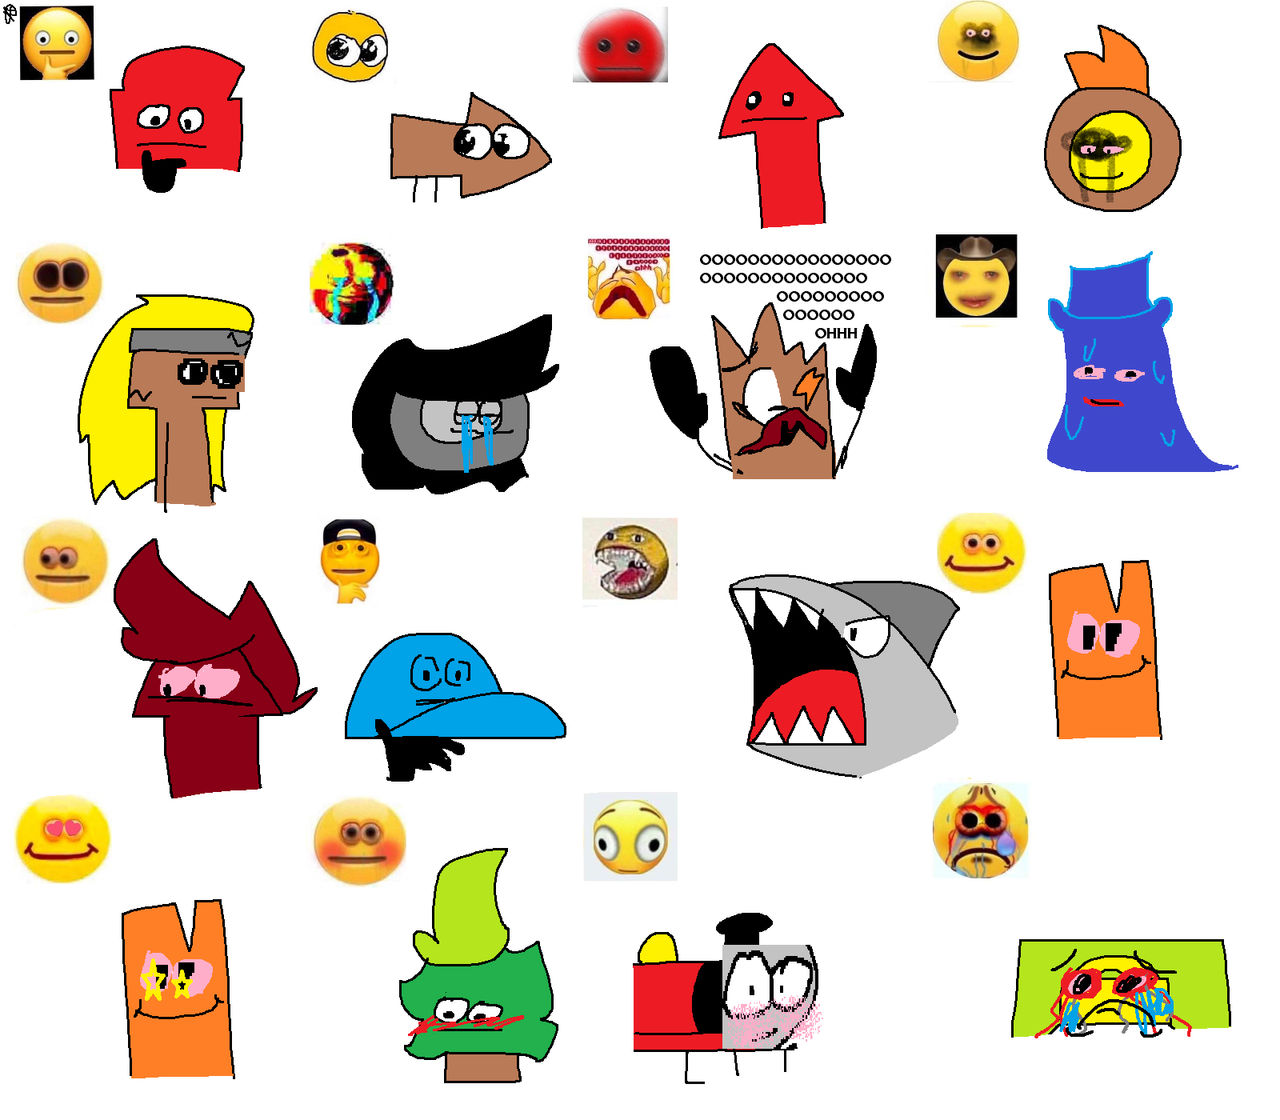 Cursed Emoji by Tokadog on DeviantArt